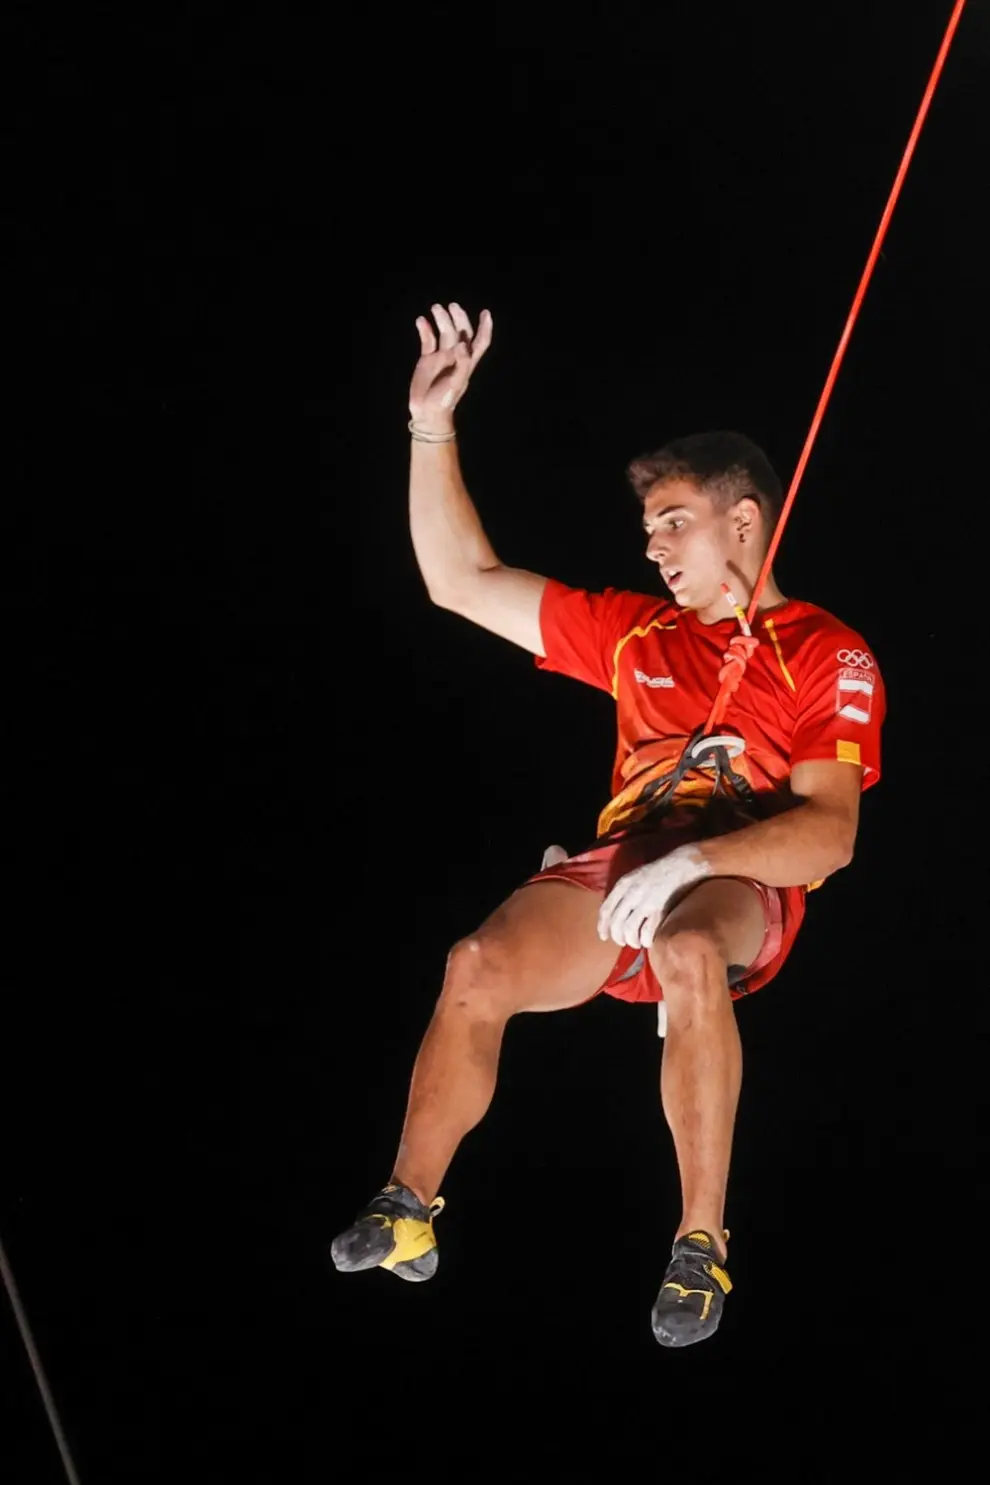 Juegos Olímpicos 2020 escalada deportiva: Alberto Ginés, oro